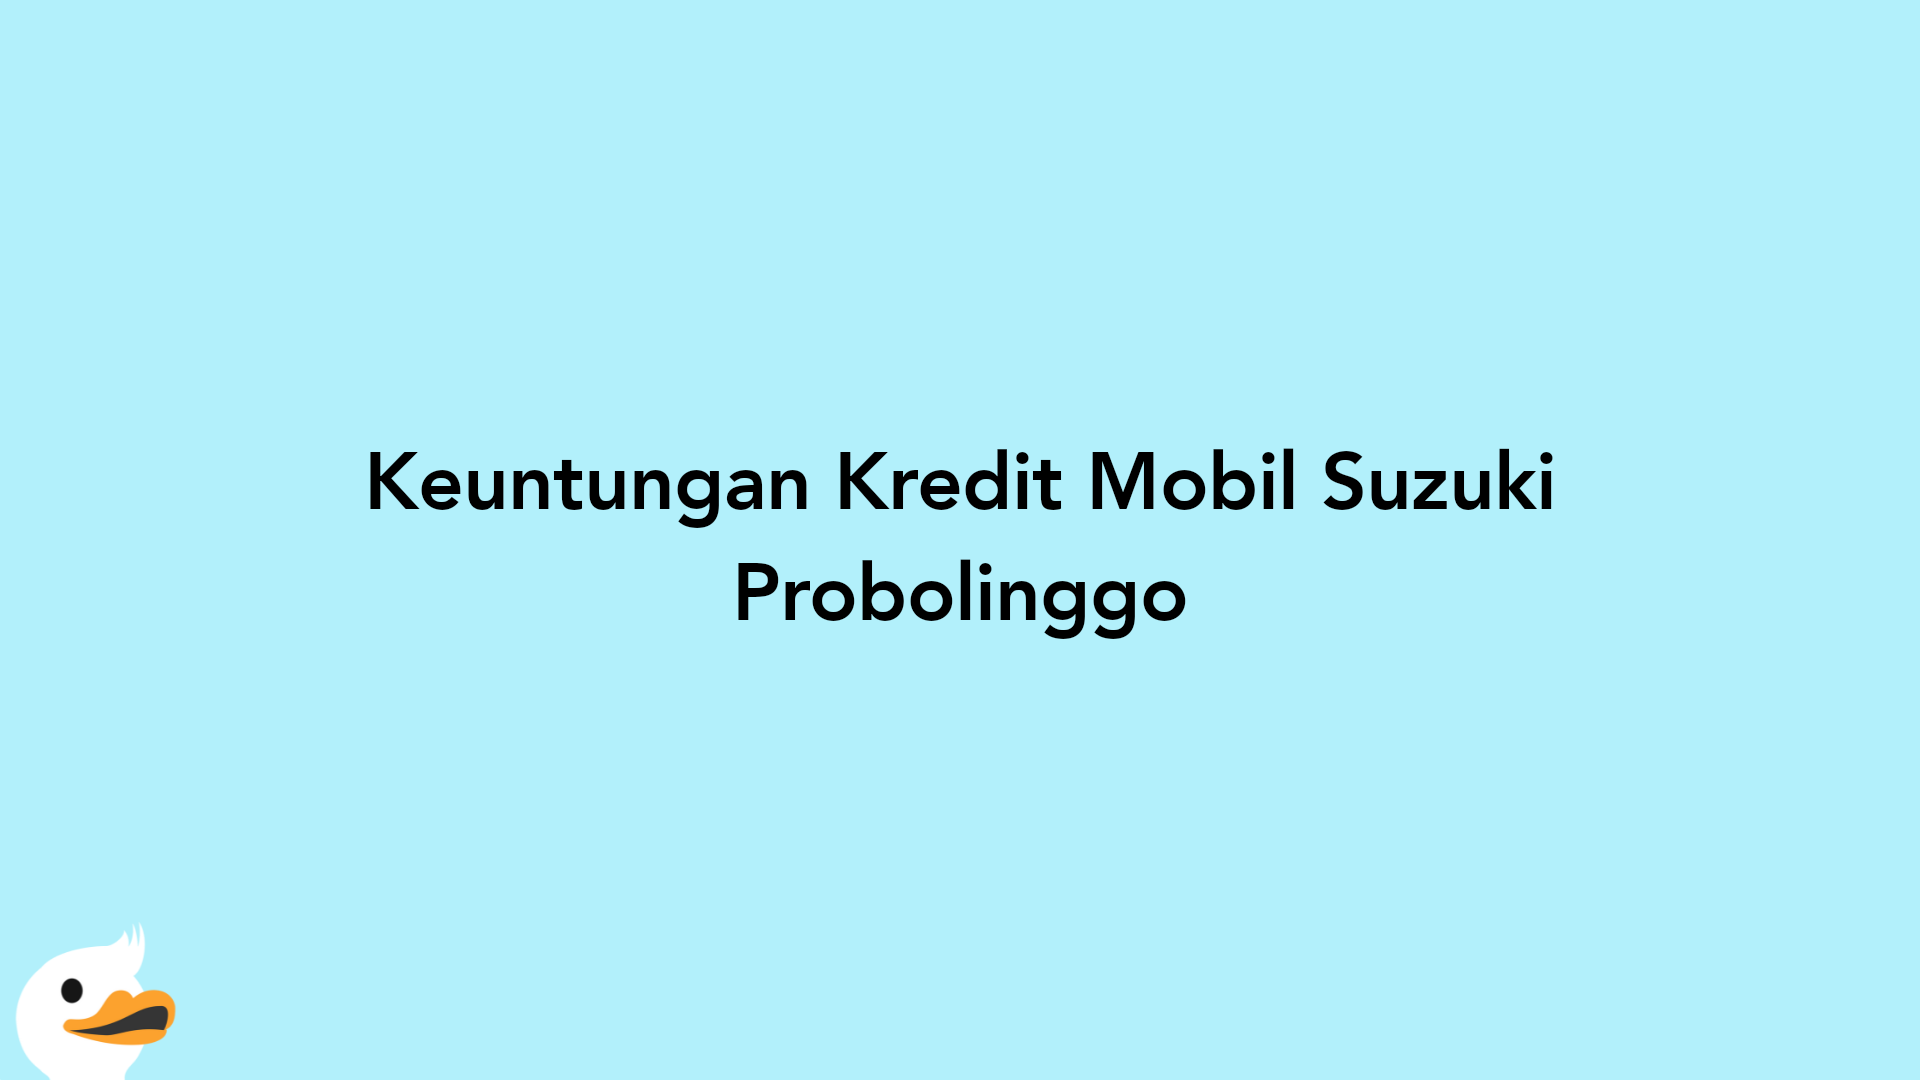 Keuntungan Kredit Mobil Suzuki Probolinggo